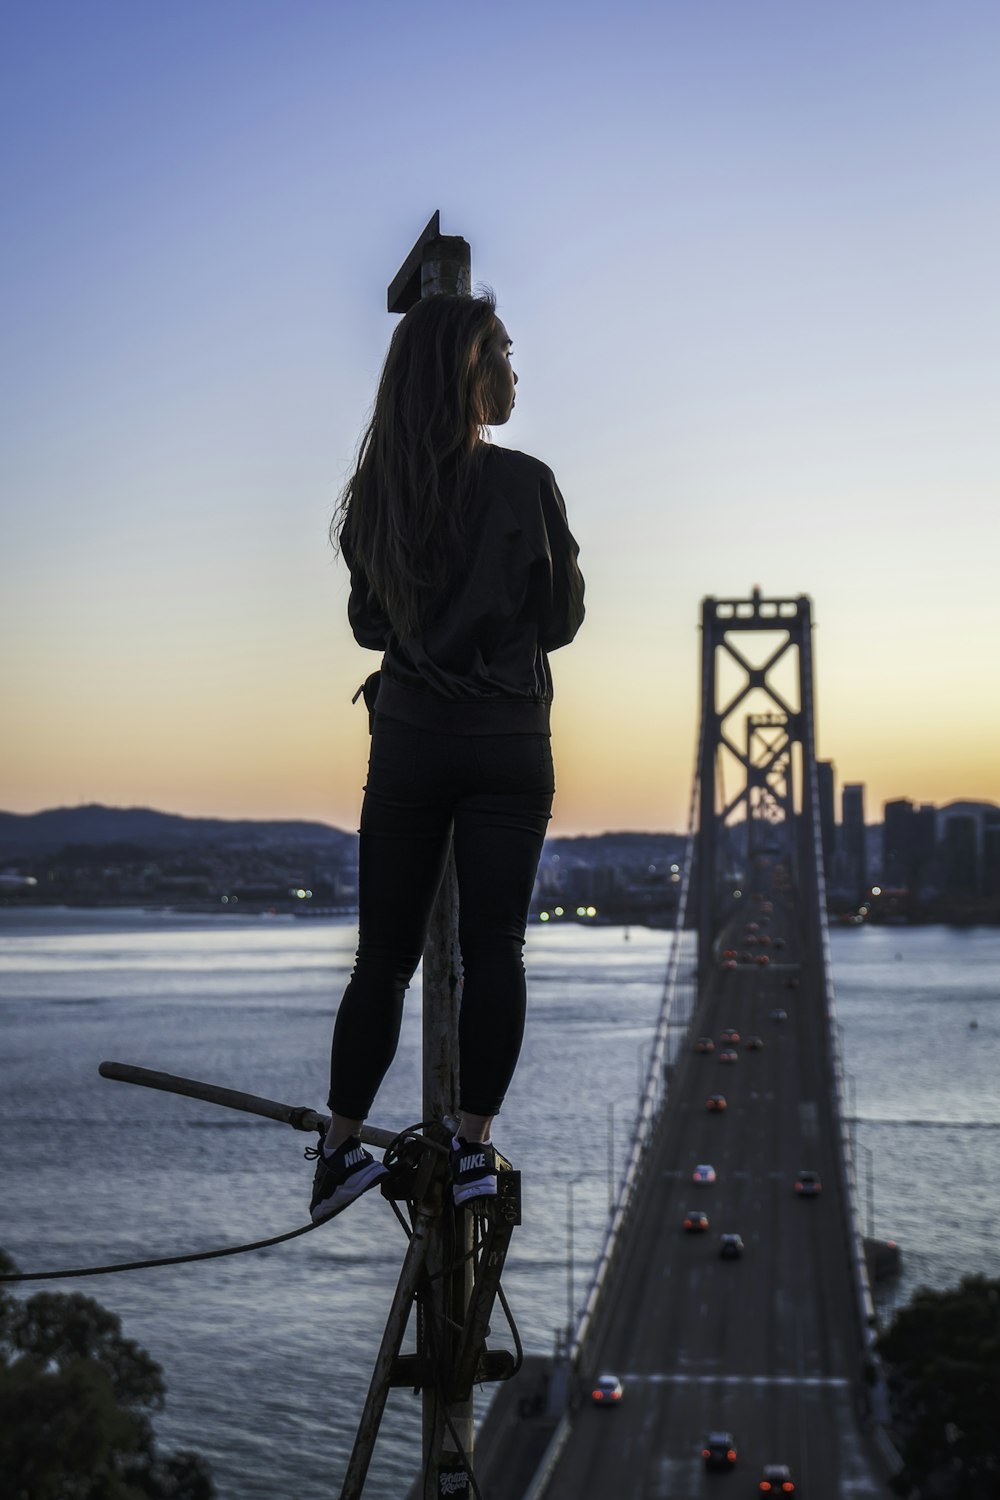 femme debout sur un poteau métallique regardant le pont de la baie  d'Oakland pendant l'heure d'or photo – Photo Humain Gratuite sur Unsplash